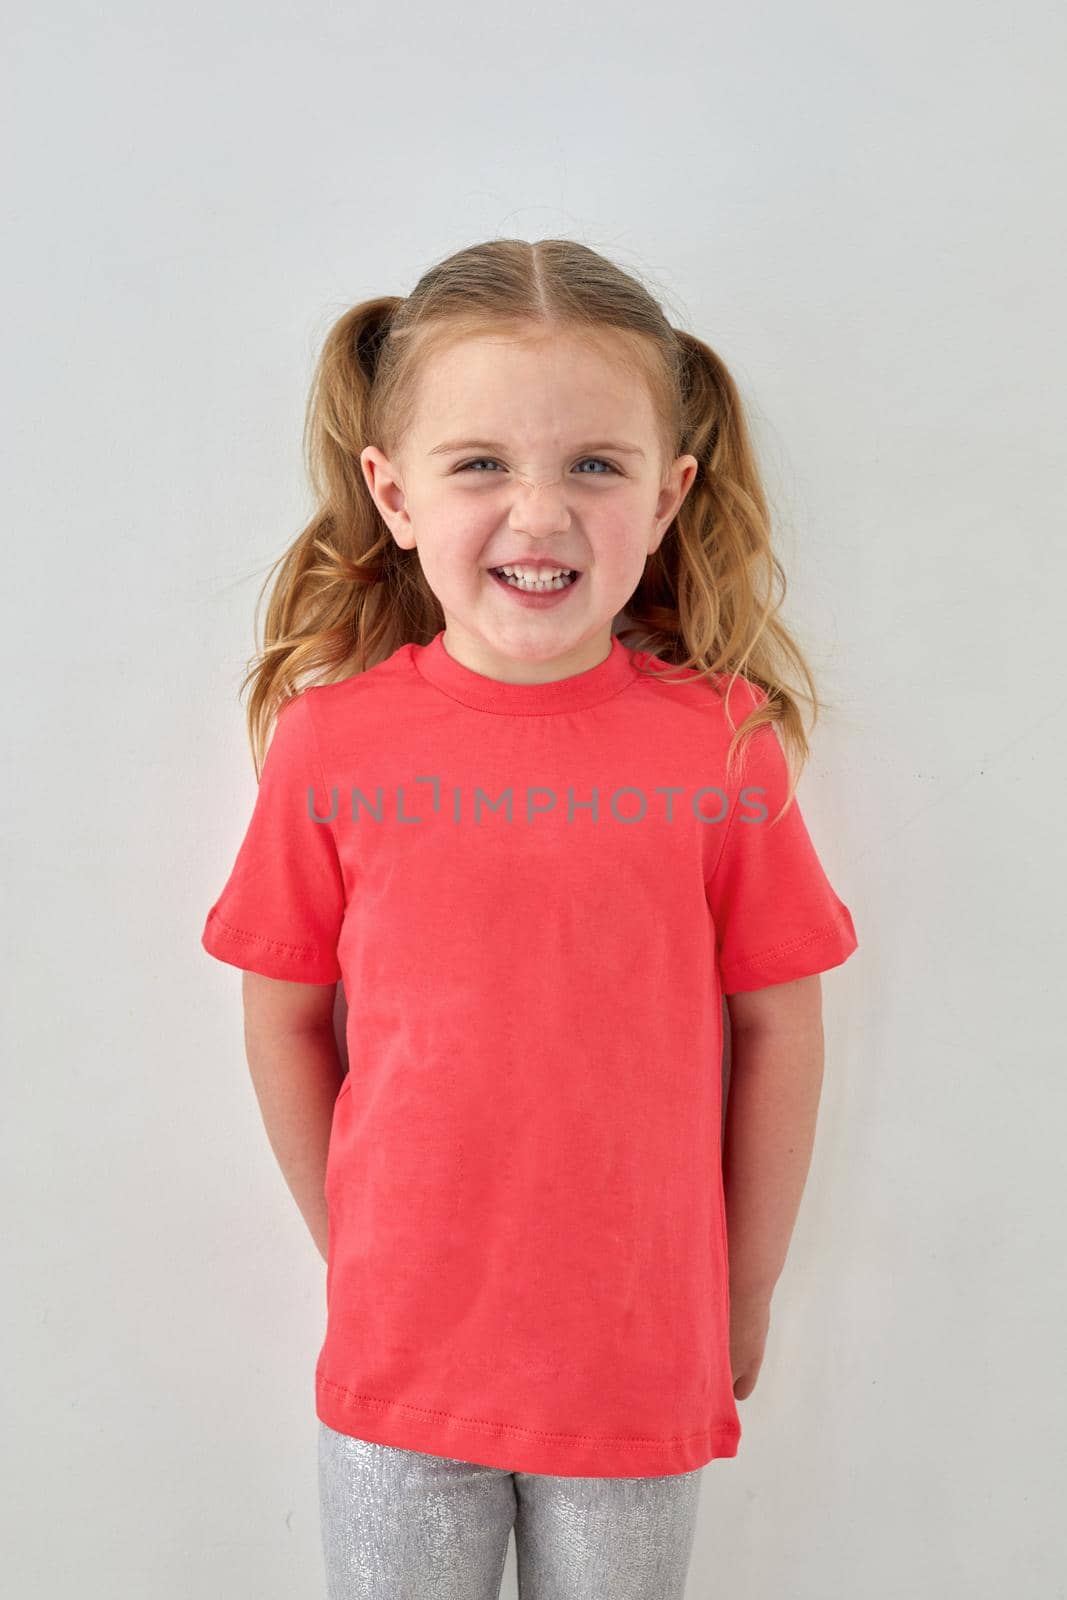 Happy little girl in pink shirt standing in studio by Demkat